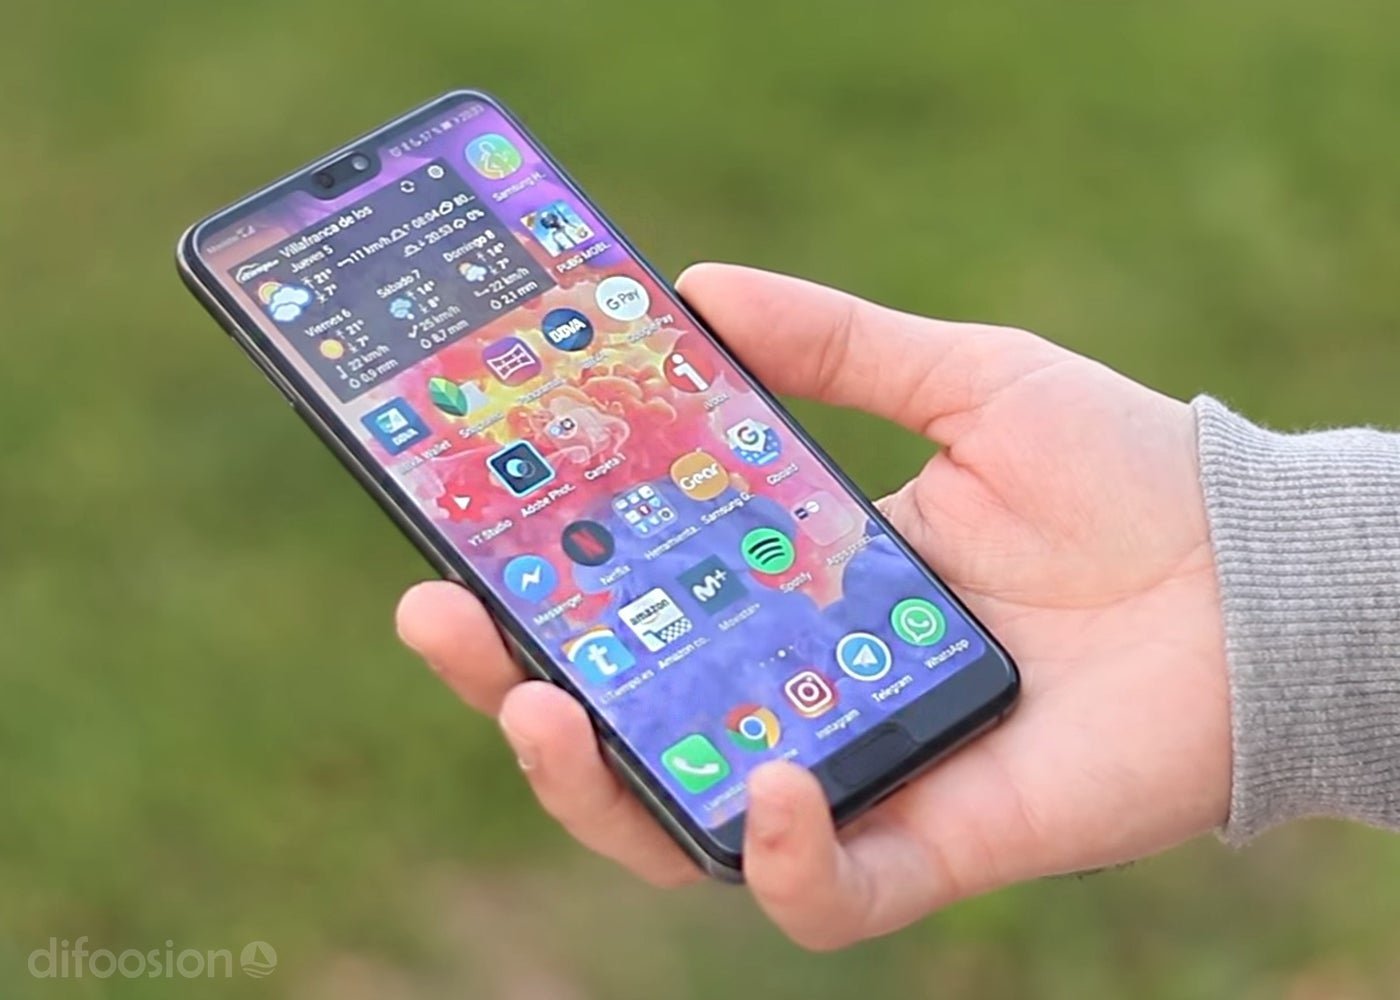 El próximo smartphone de Huawei tendría una gigantesca pantalla de 6,9 pulgadas